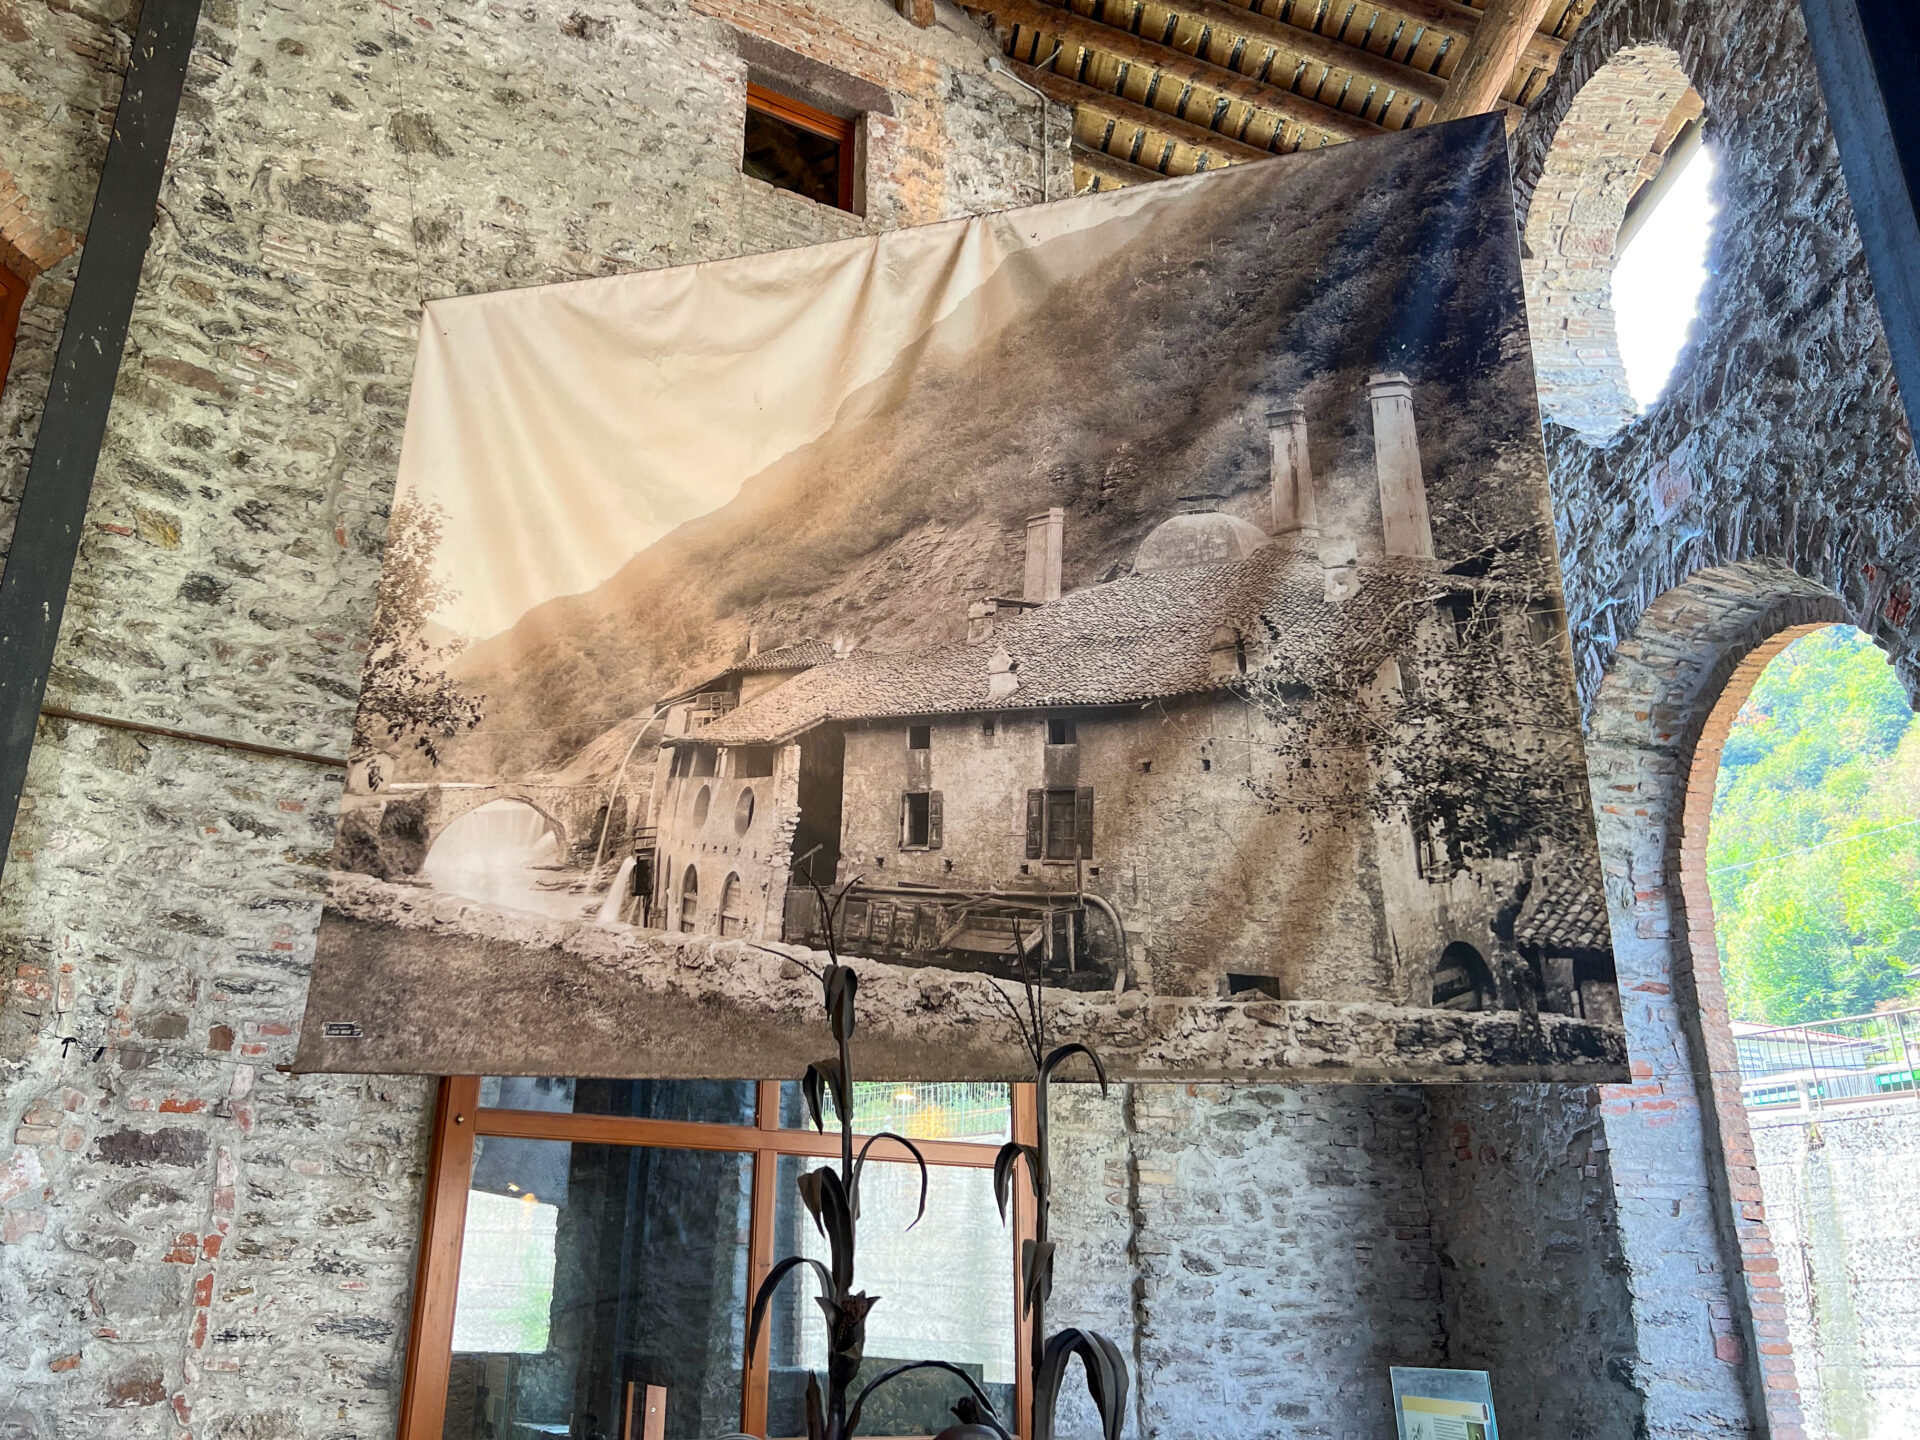 Museo Il Forno in Norditalien erinnert an die Vergangenheit als Zentrum der Eisenerzförderung